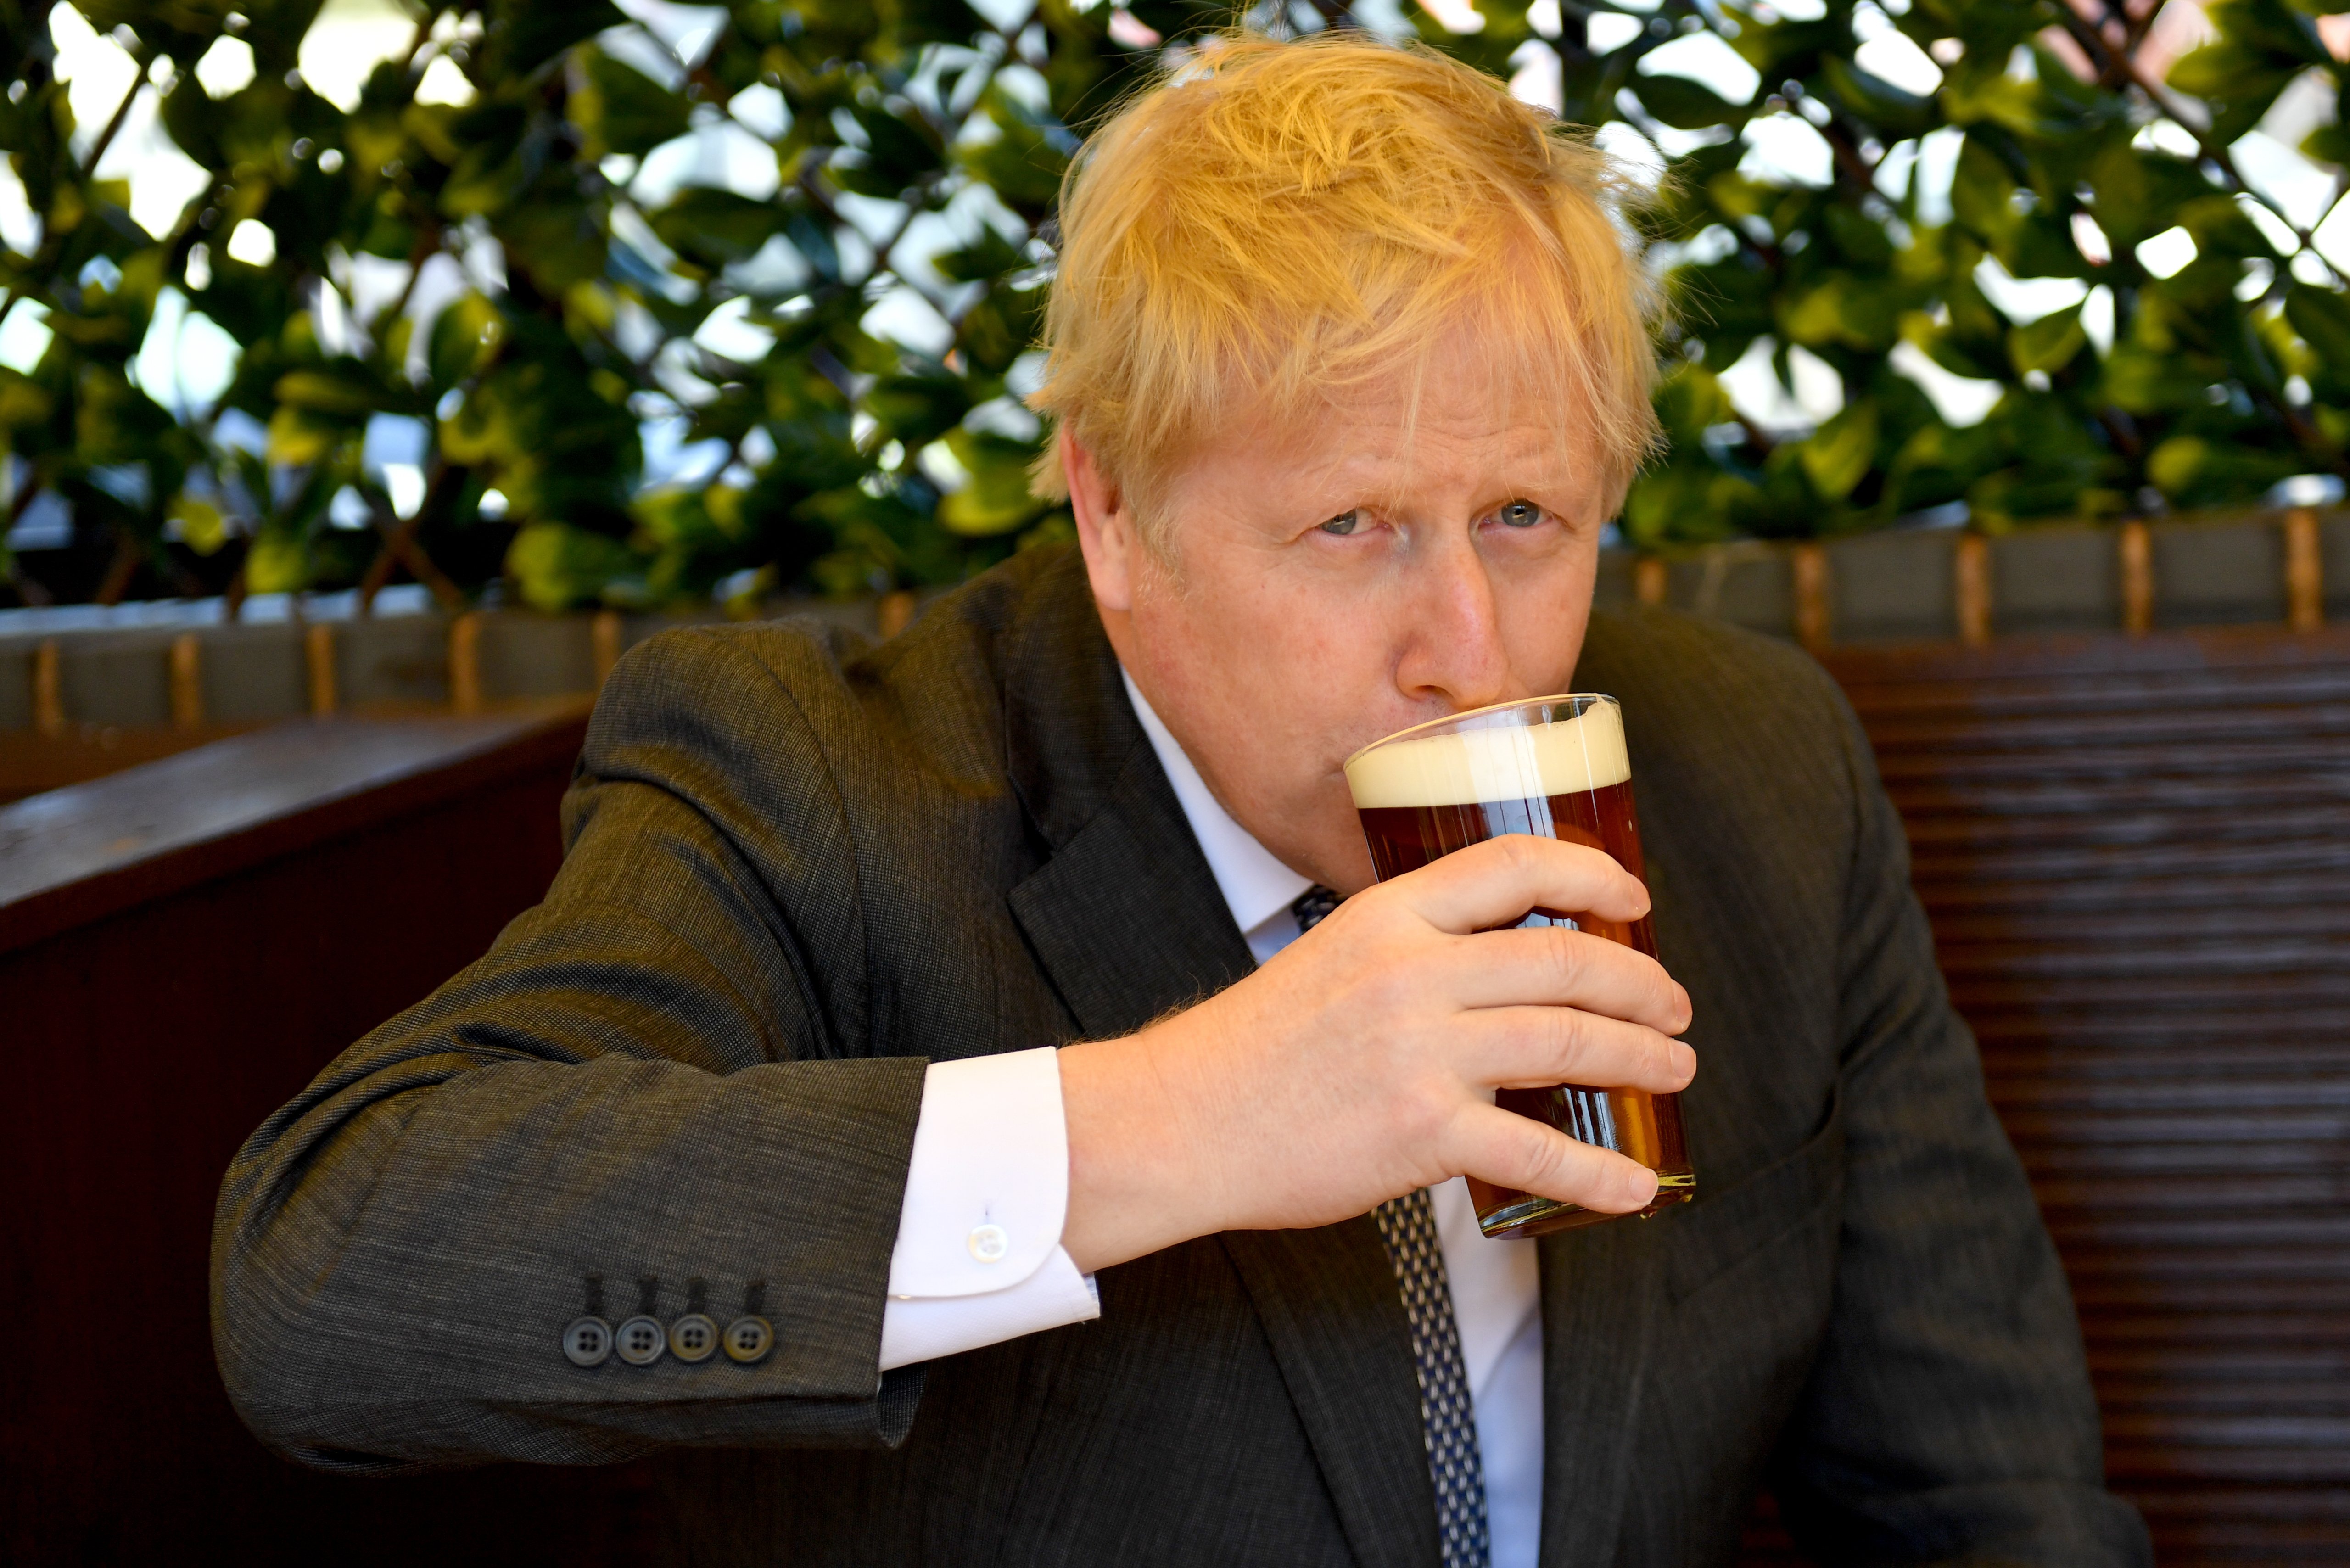 Champán, cervezas y trivial: así eran las fiestas de Boris Johnson